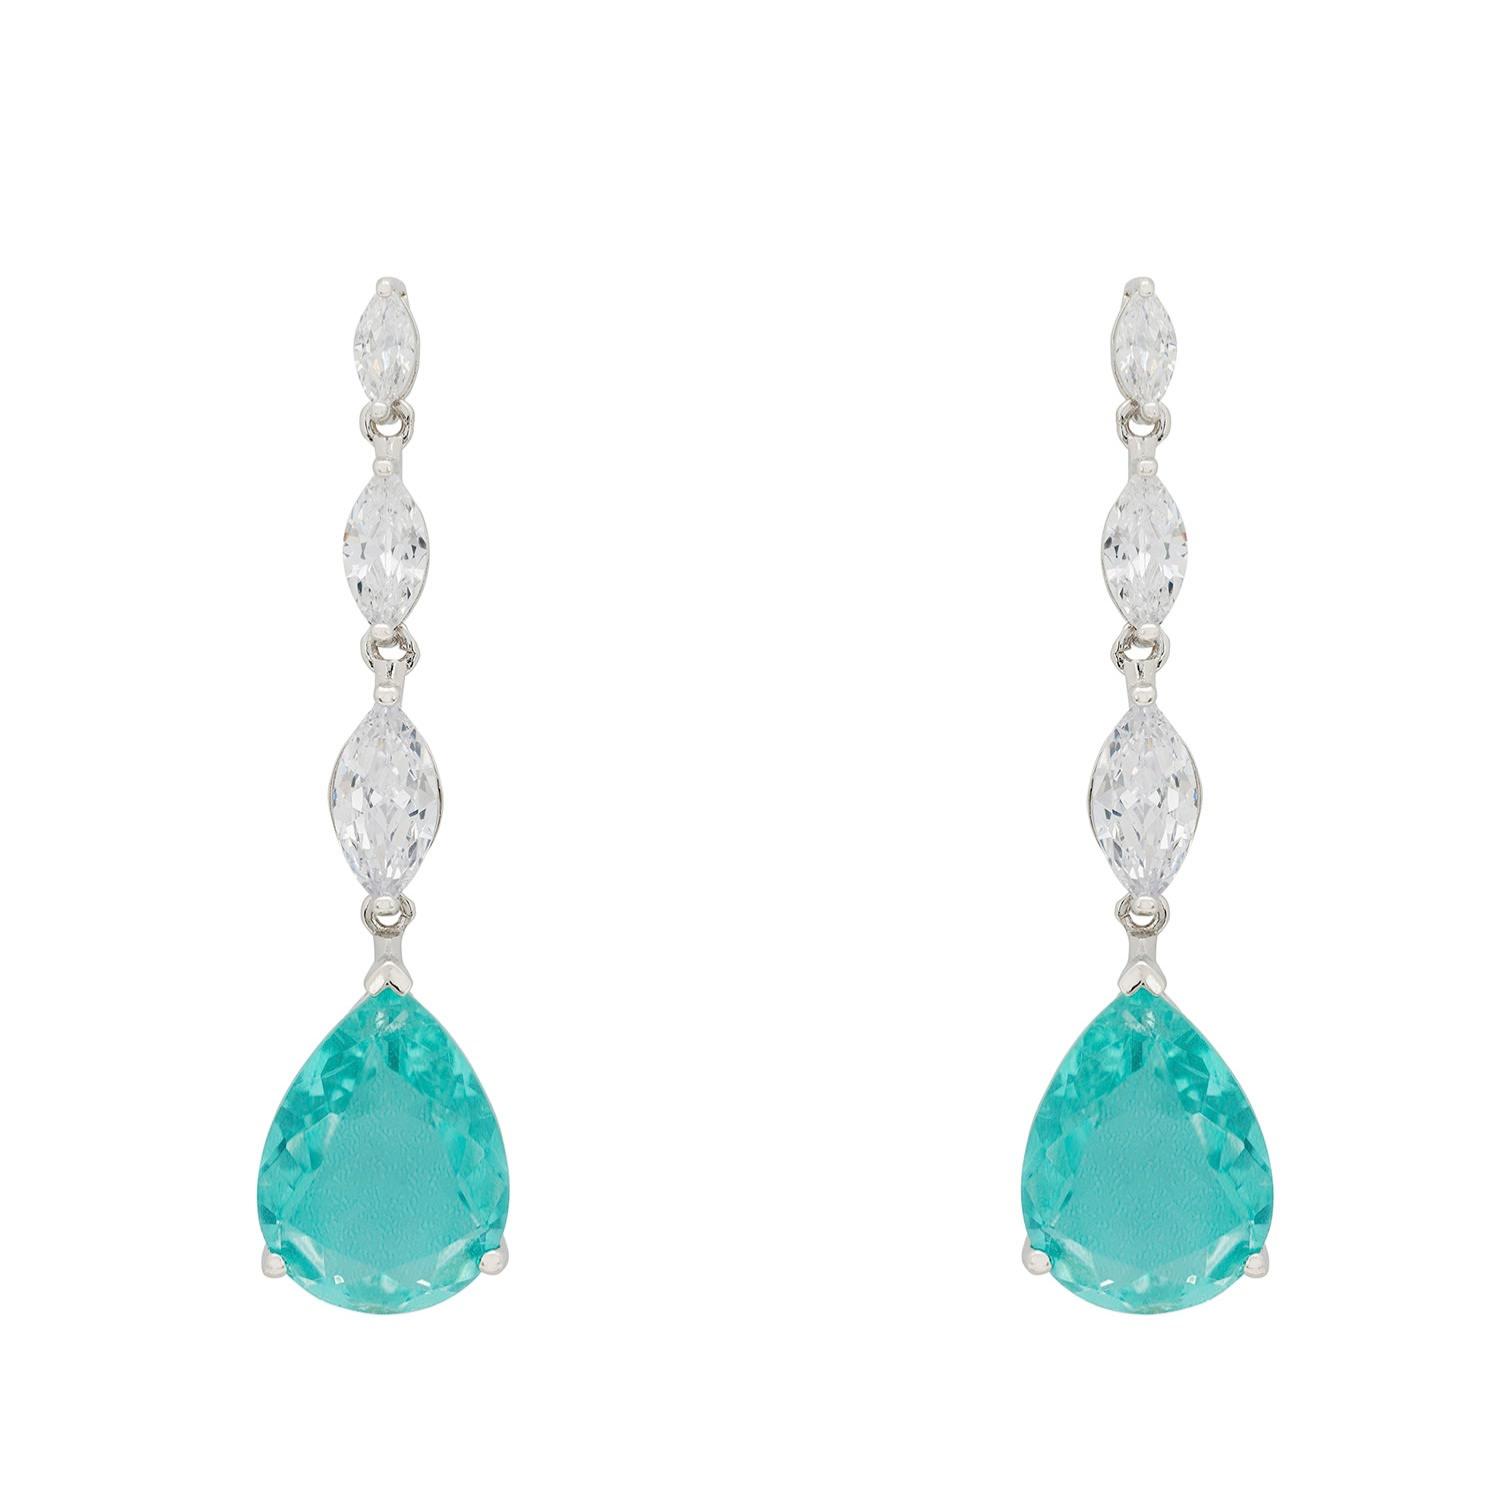 LÁTELITA London Zara Teardrop Paraiba Tourmaline Gemstone Earrings Silver  in Blue | Lyst